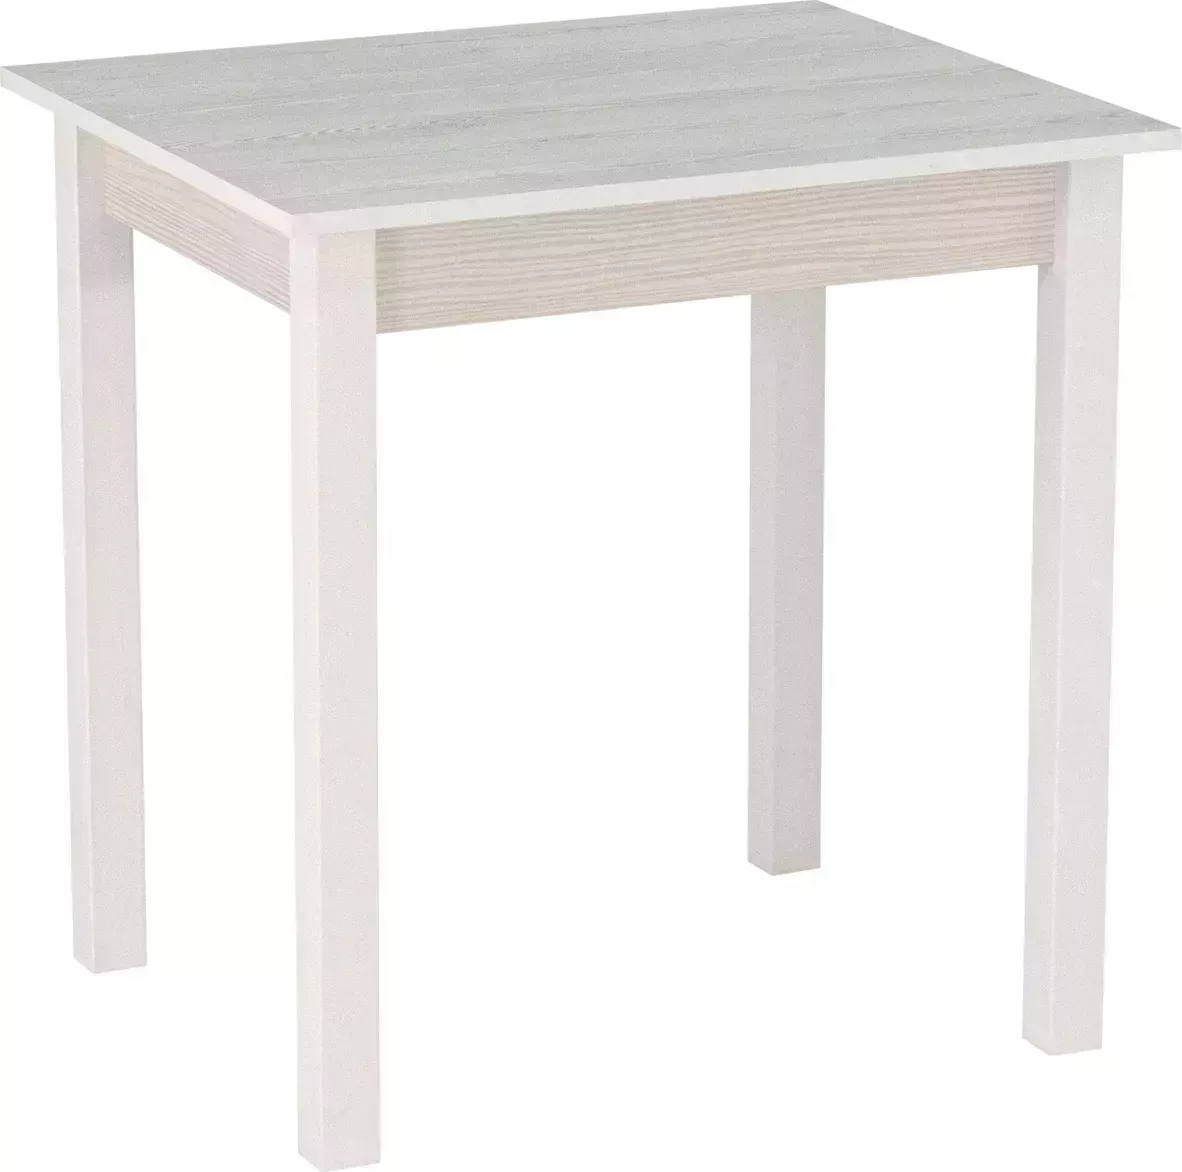 Стол обеденный Боровичи-Мебель Компакт белый / сосна белая